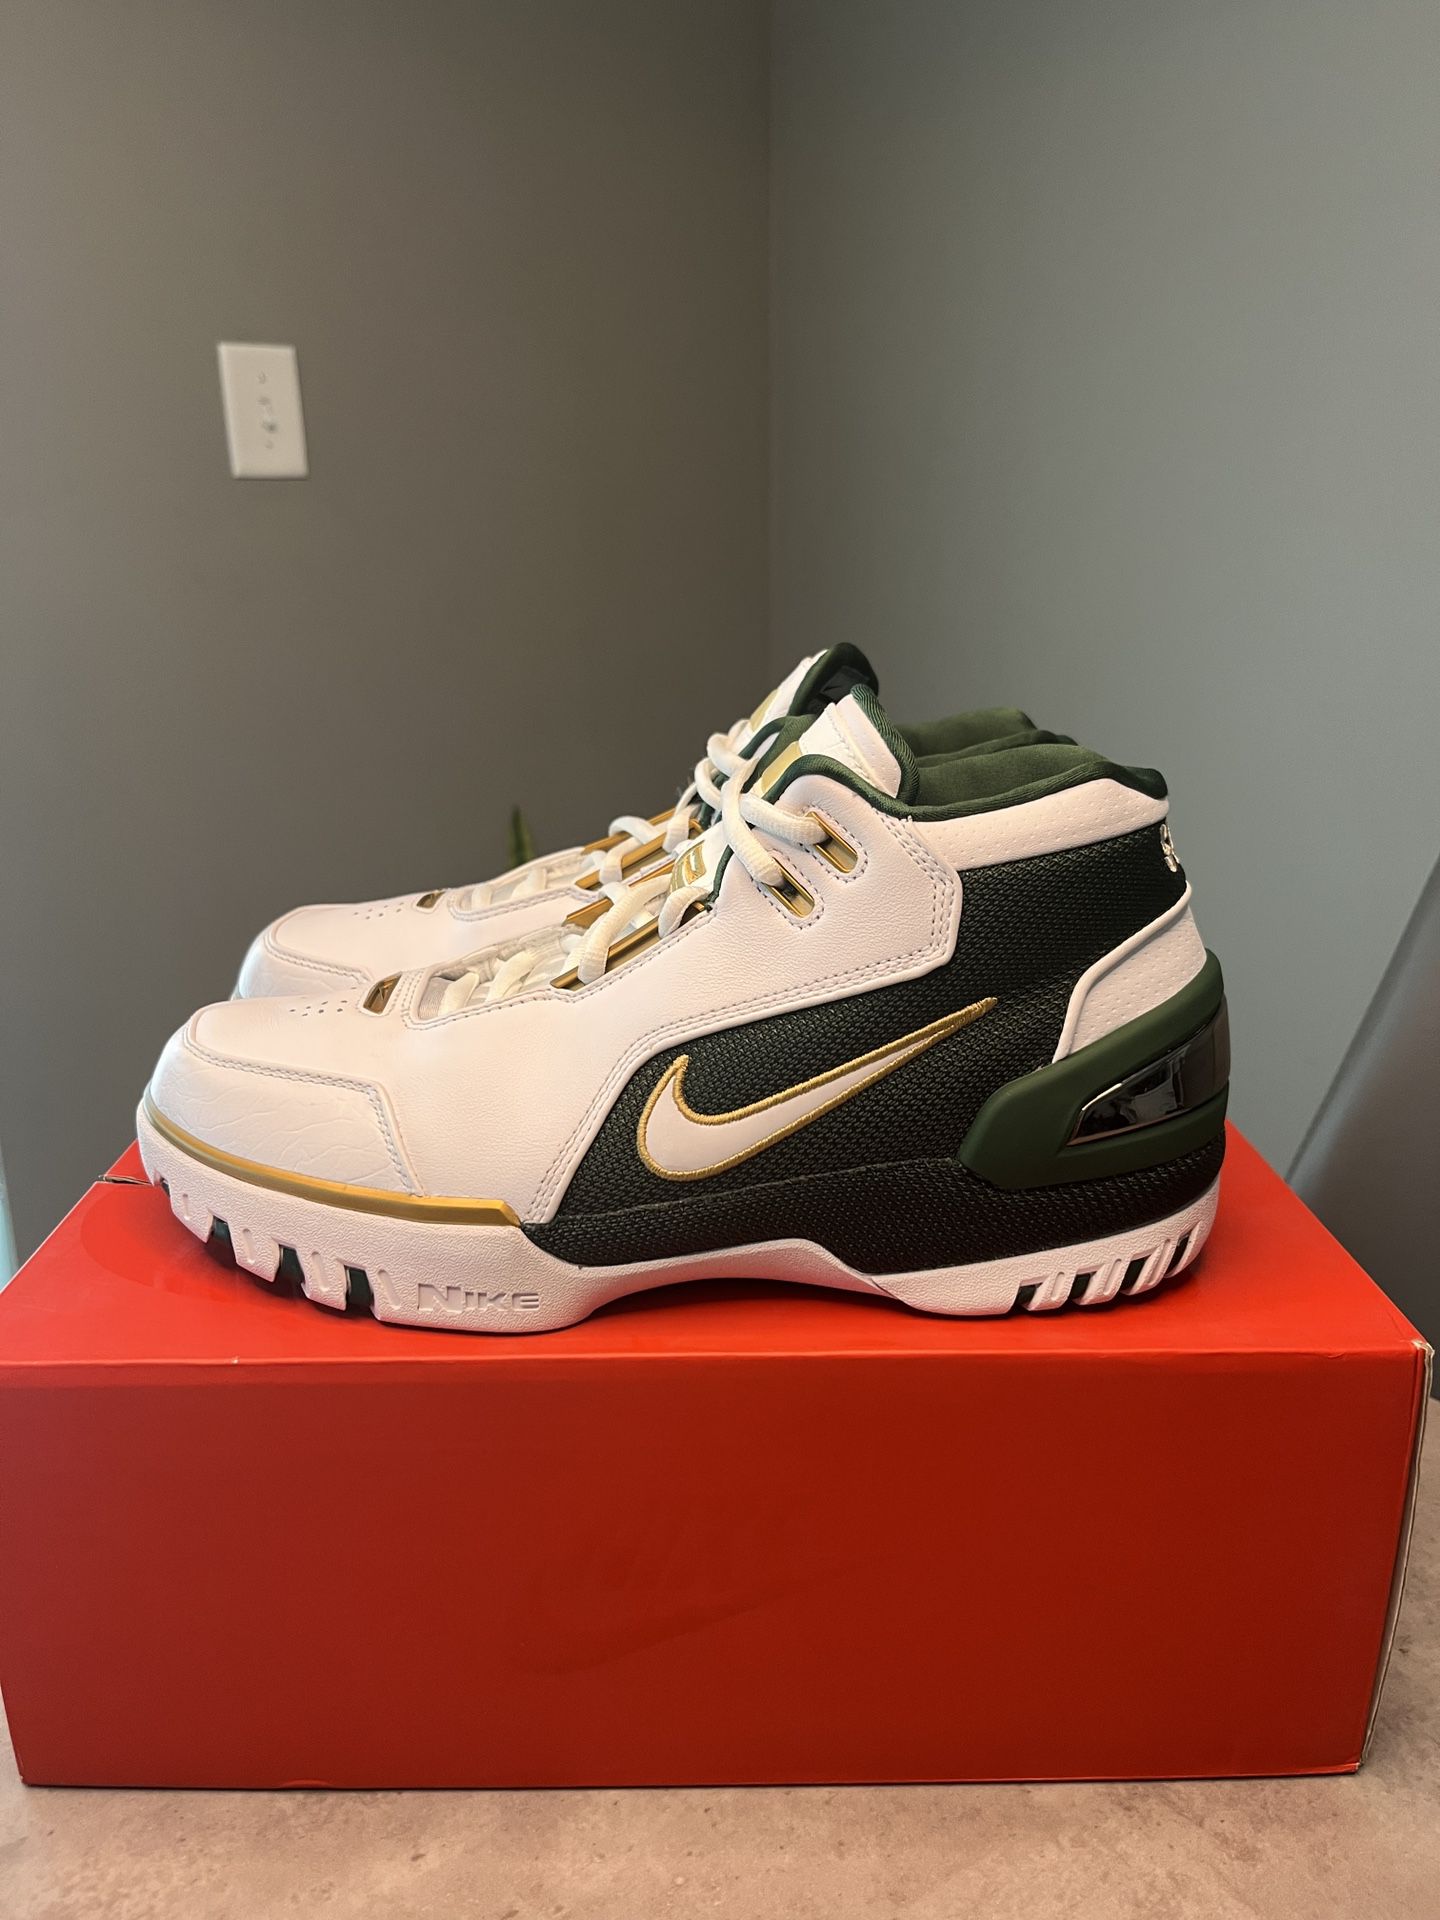 Nike Lebron 1 Generation SVSM Size 9